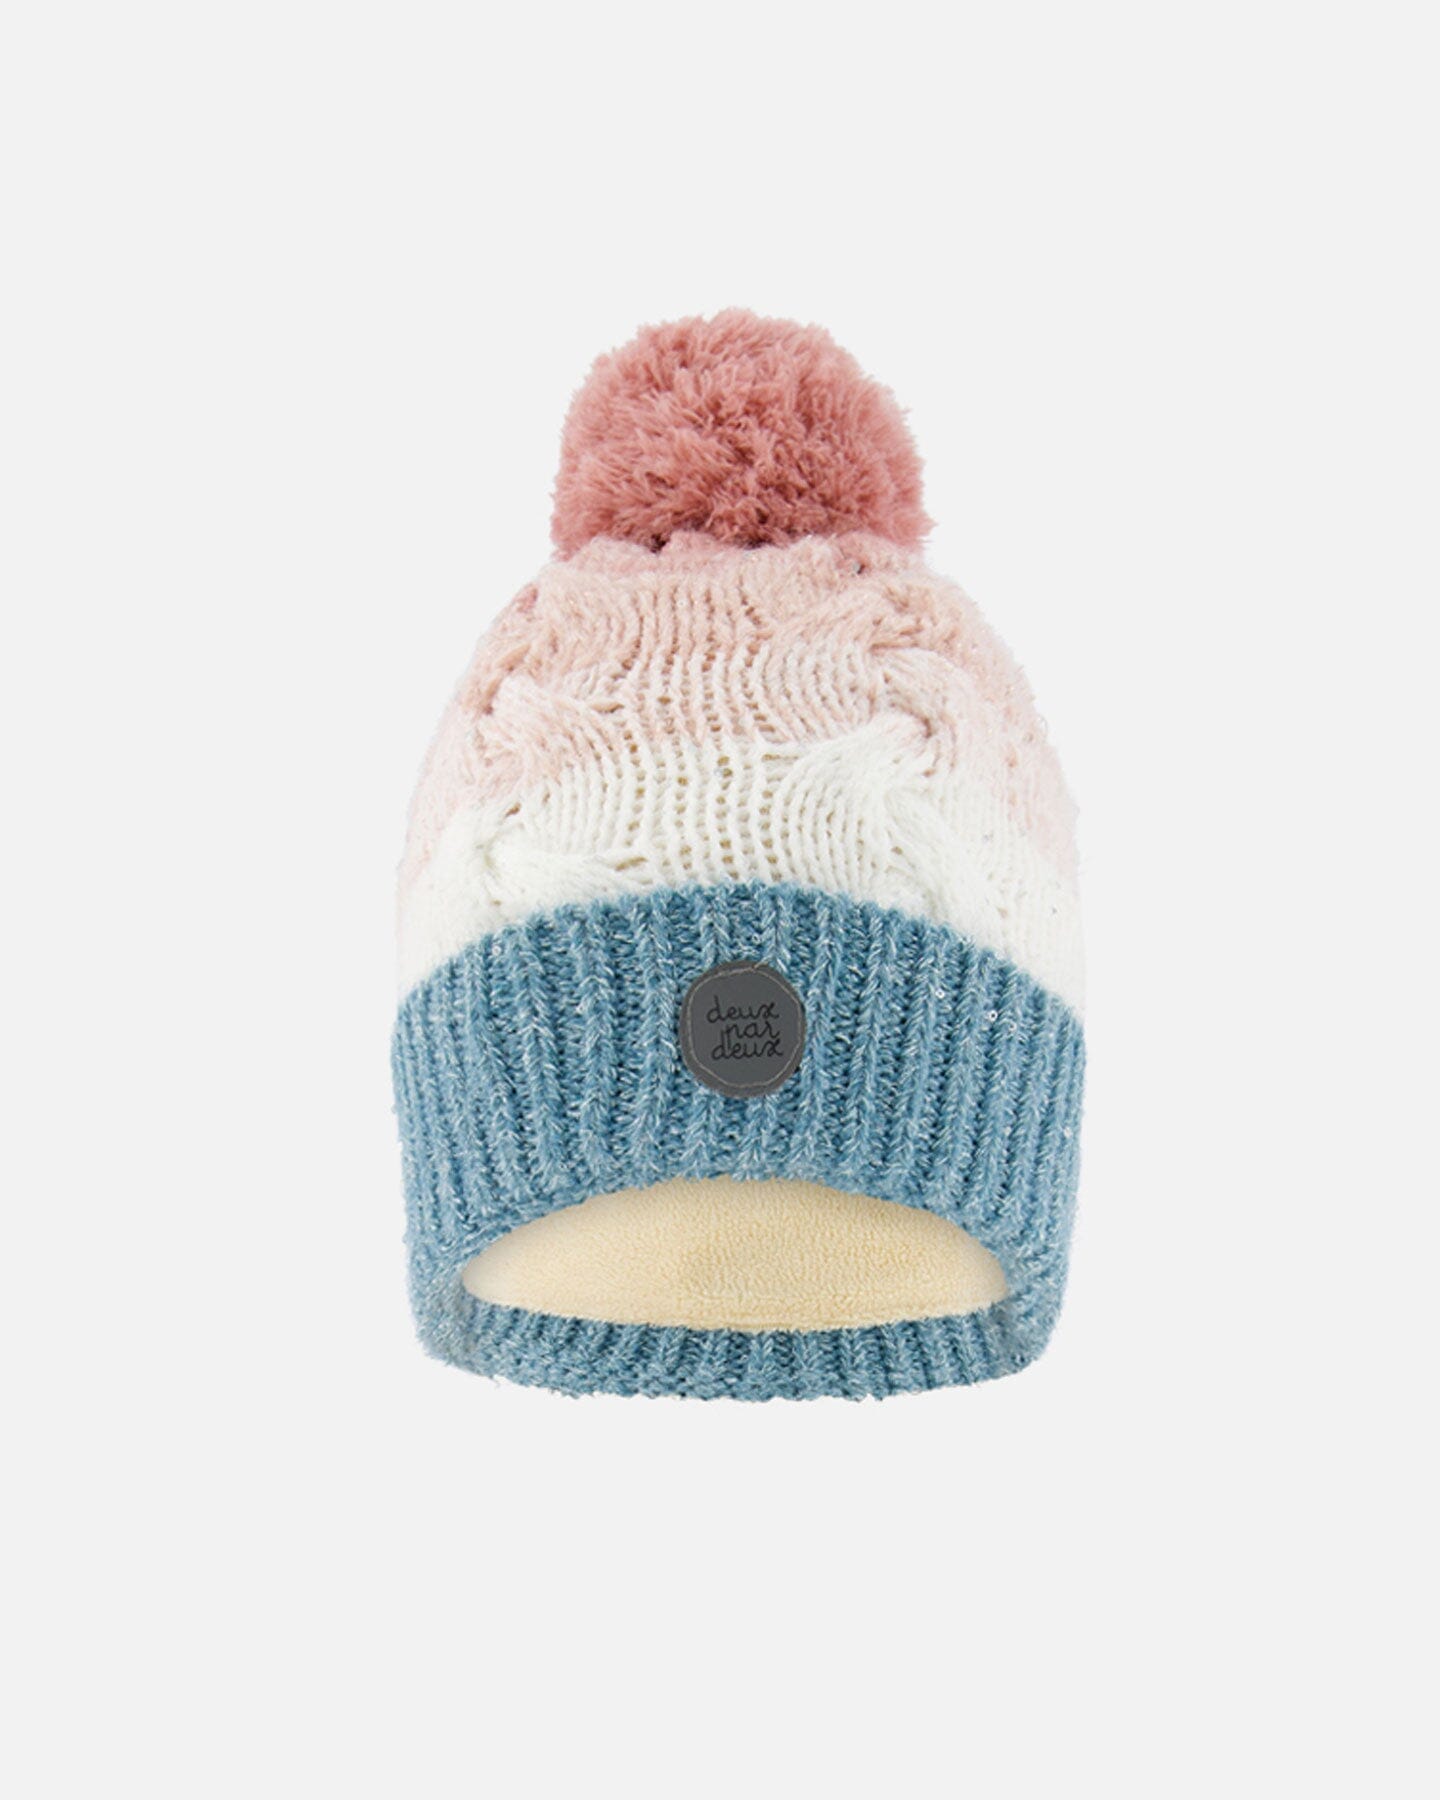 Pompom Winter Knit Hat Pink And Blue Gradient Winter Accessories Deux par Deux 